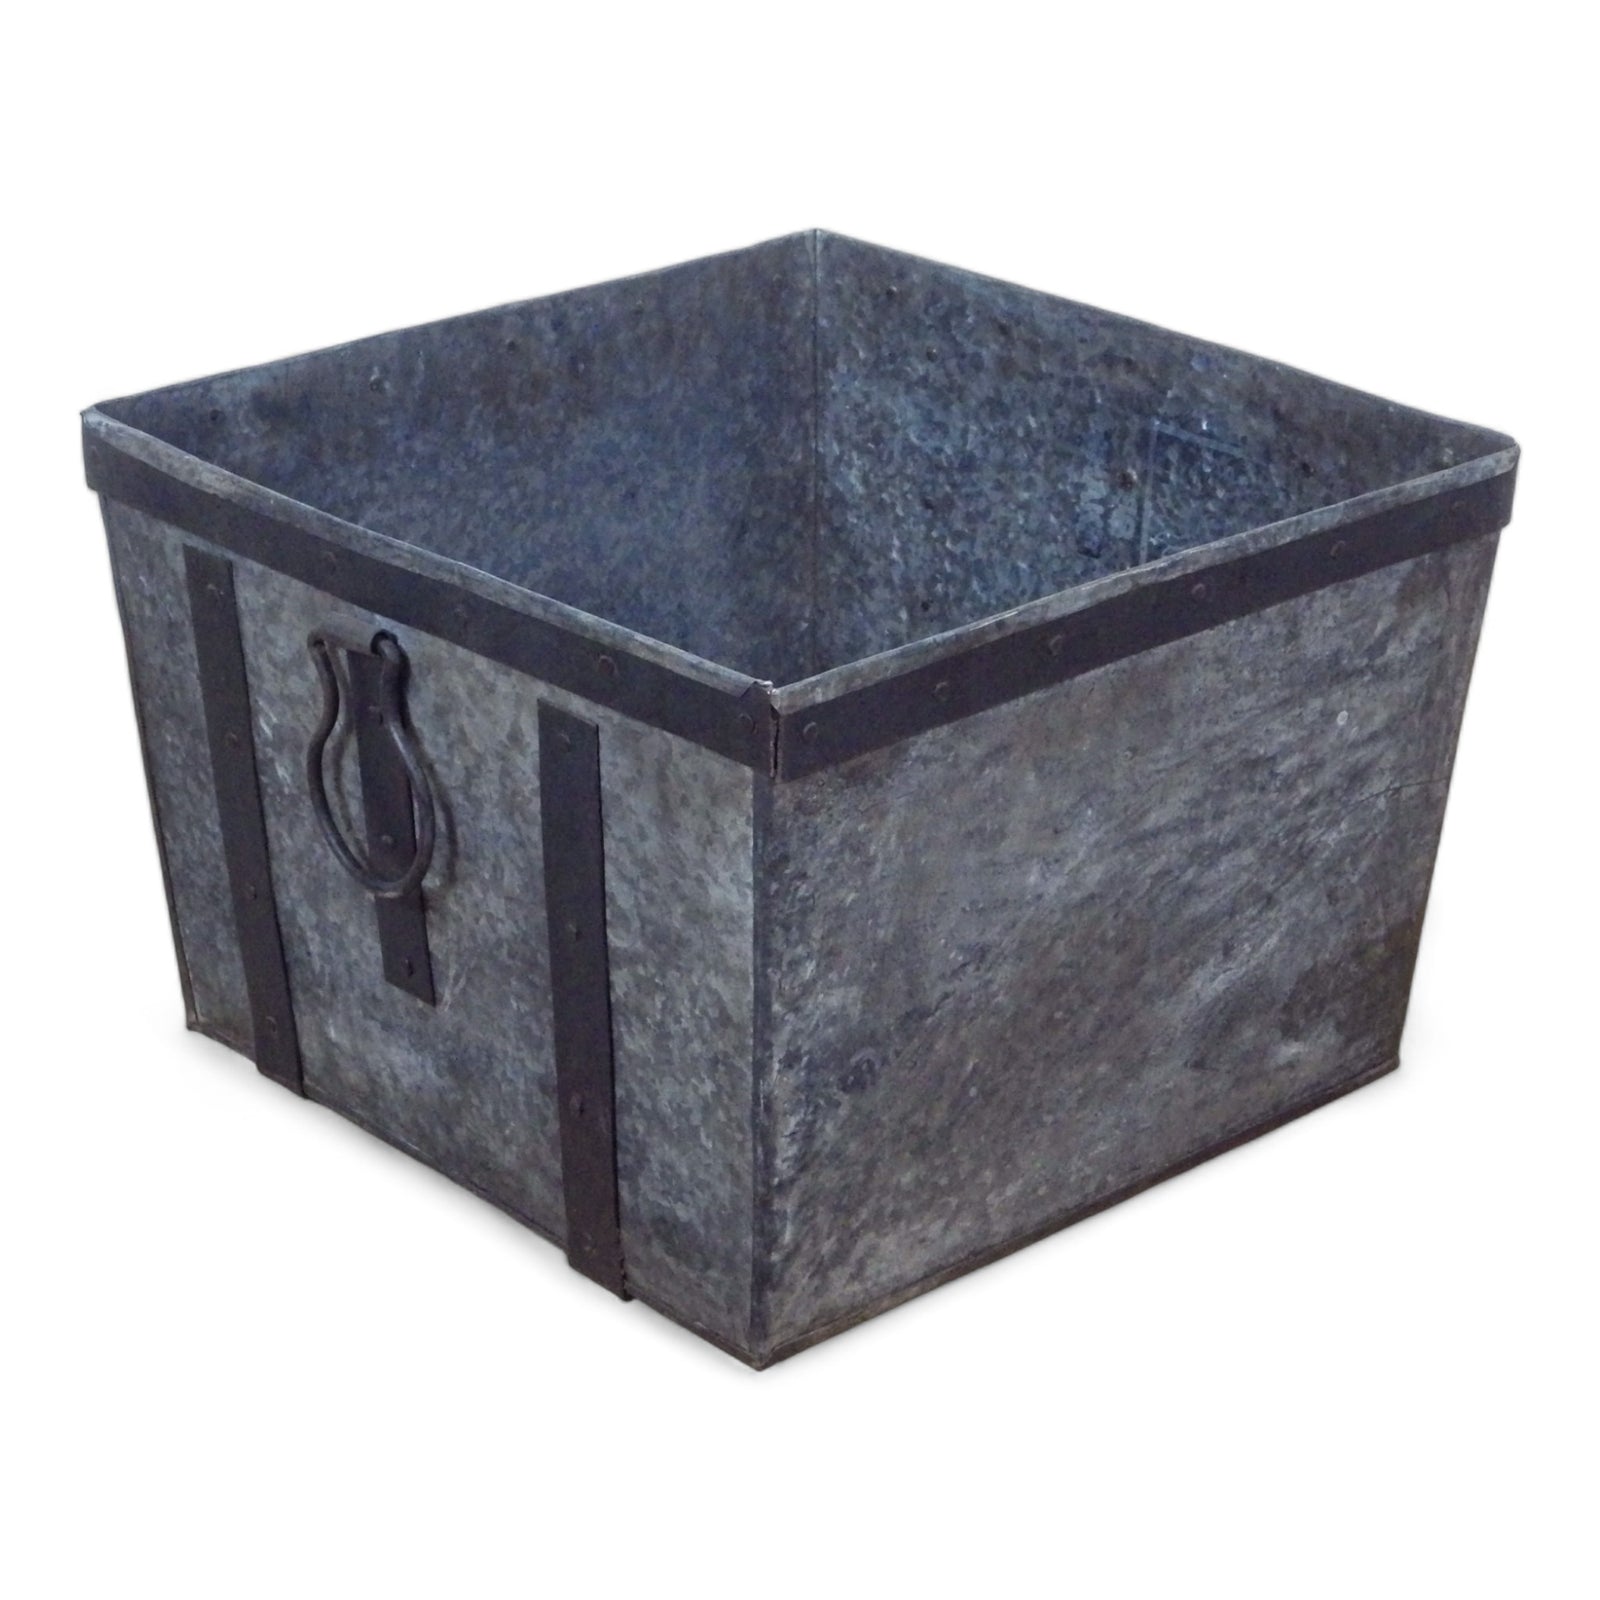 MILL-436 Large Metal Log Basket / Planter